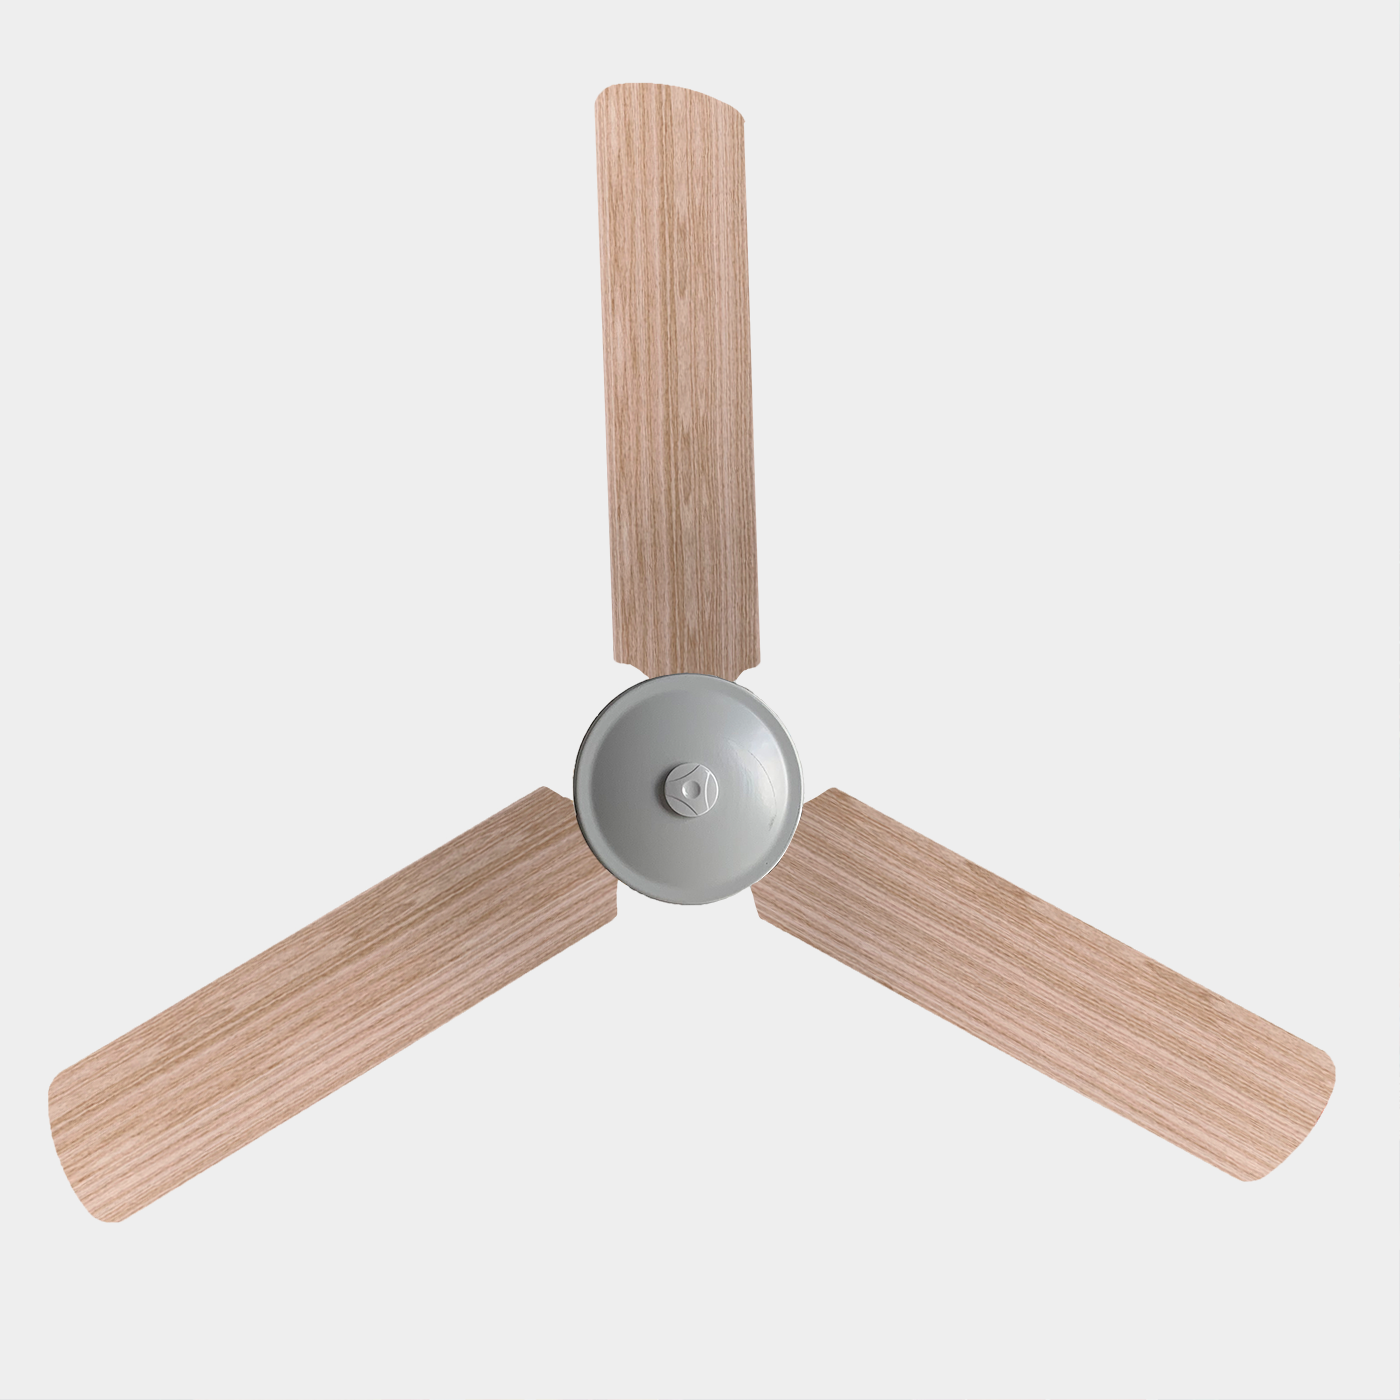 Wood grain pattern ceiling fan blade covers on three blade ceiling fan